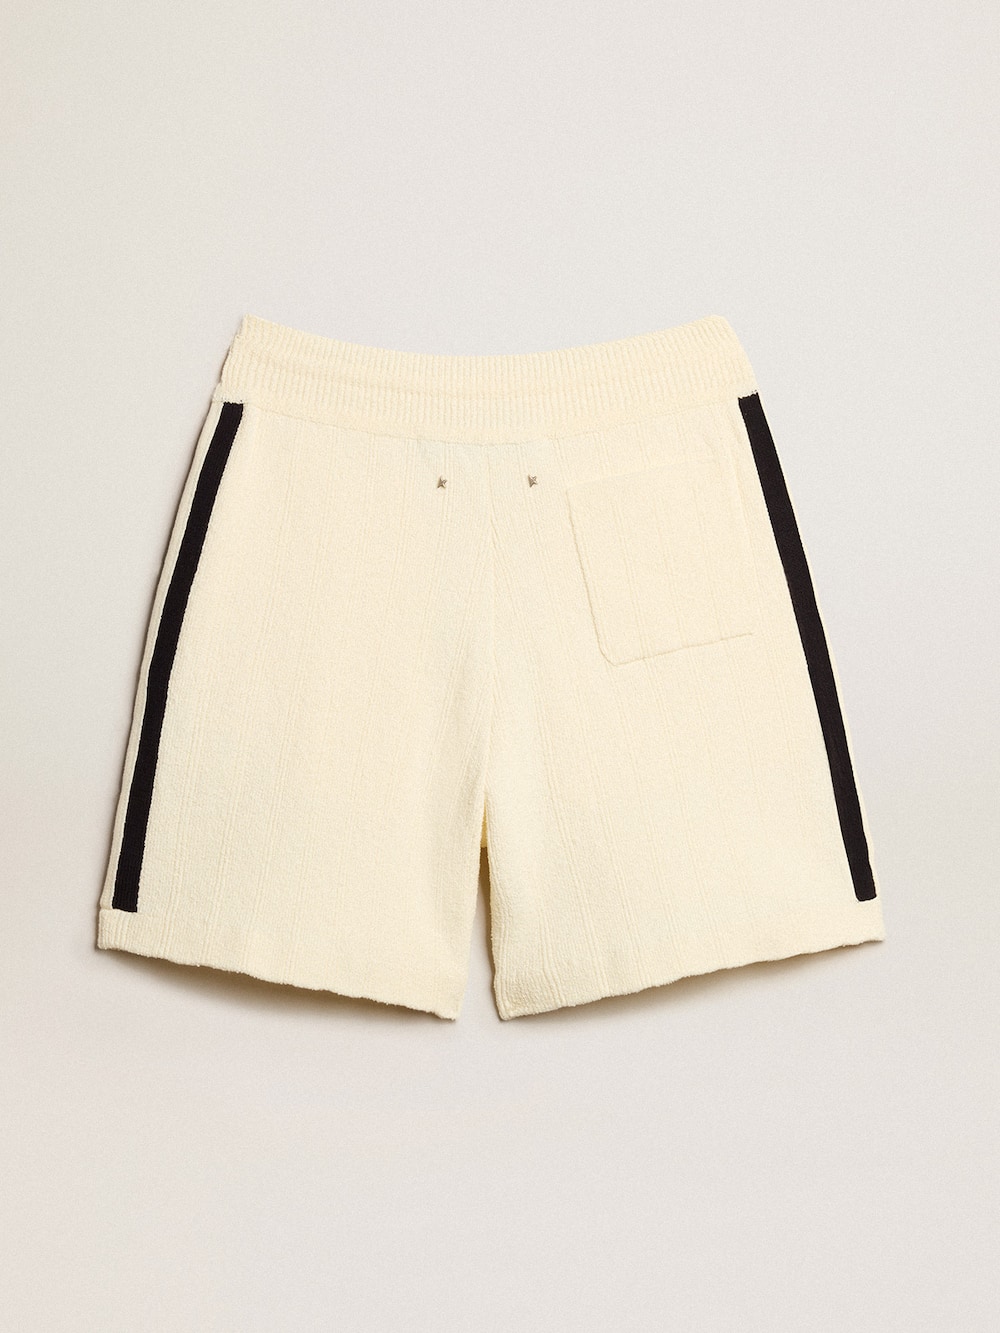 Golden Goose - Pantalón corto de mujer color blanco antiguo con tejido acanalado azul en los lados in 